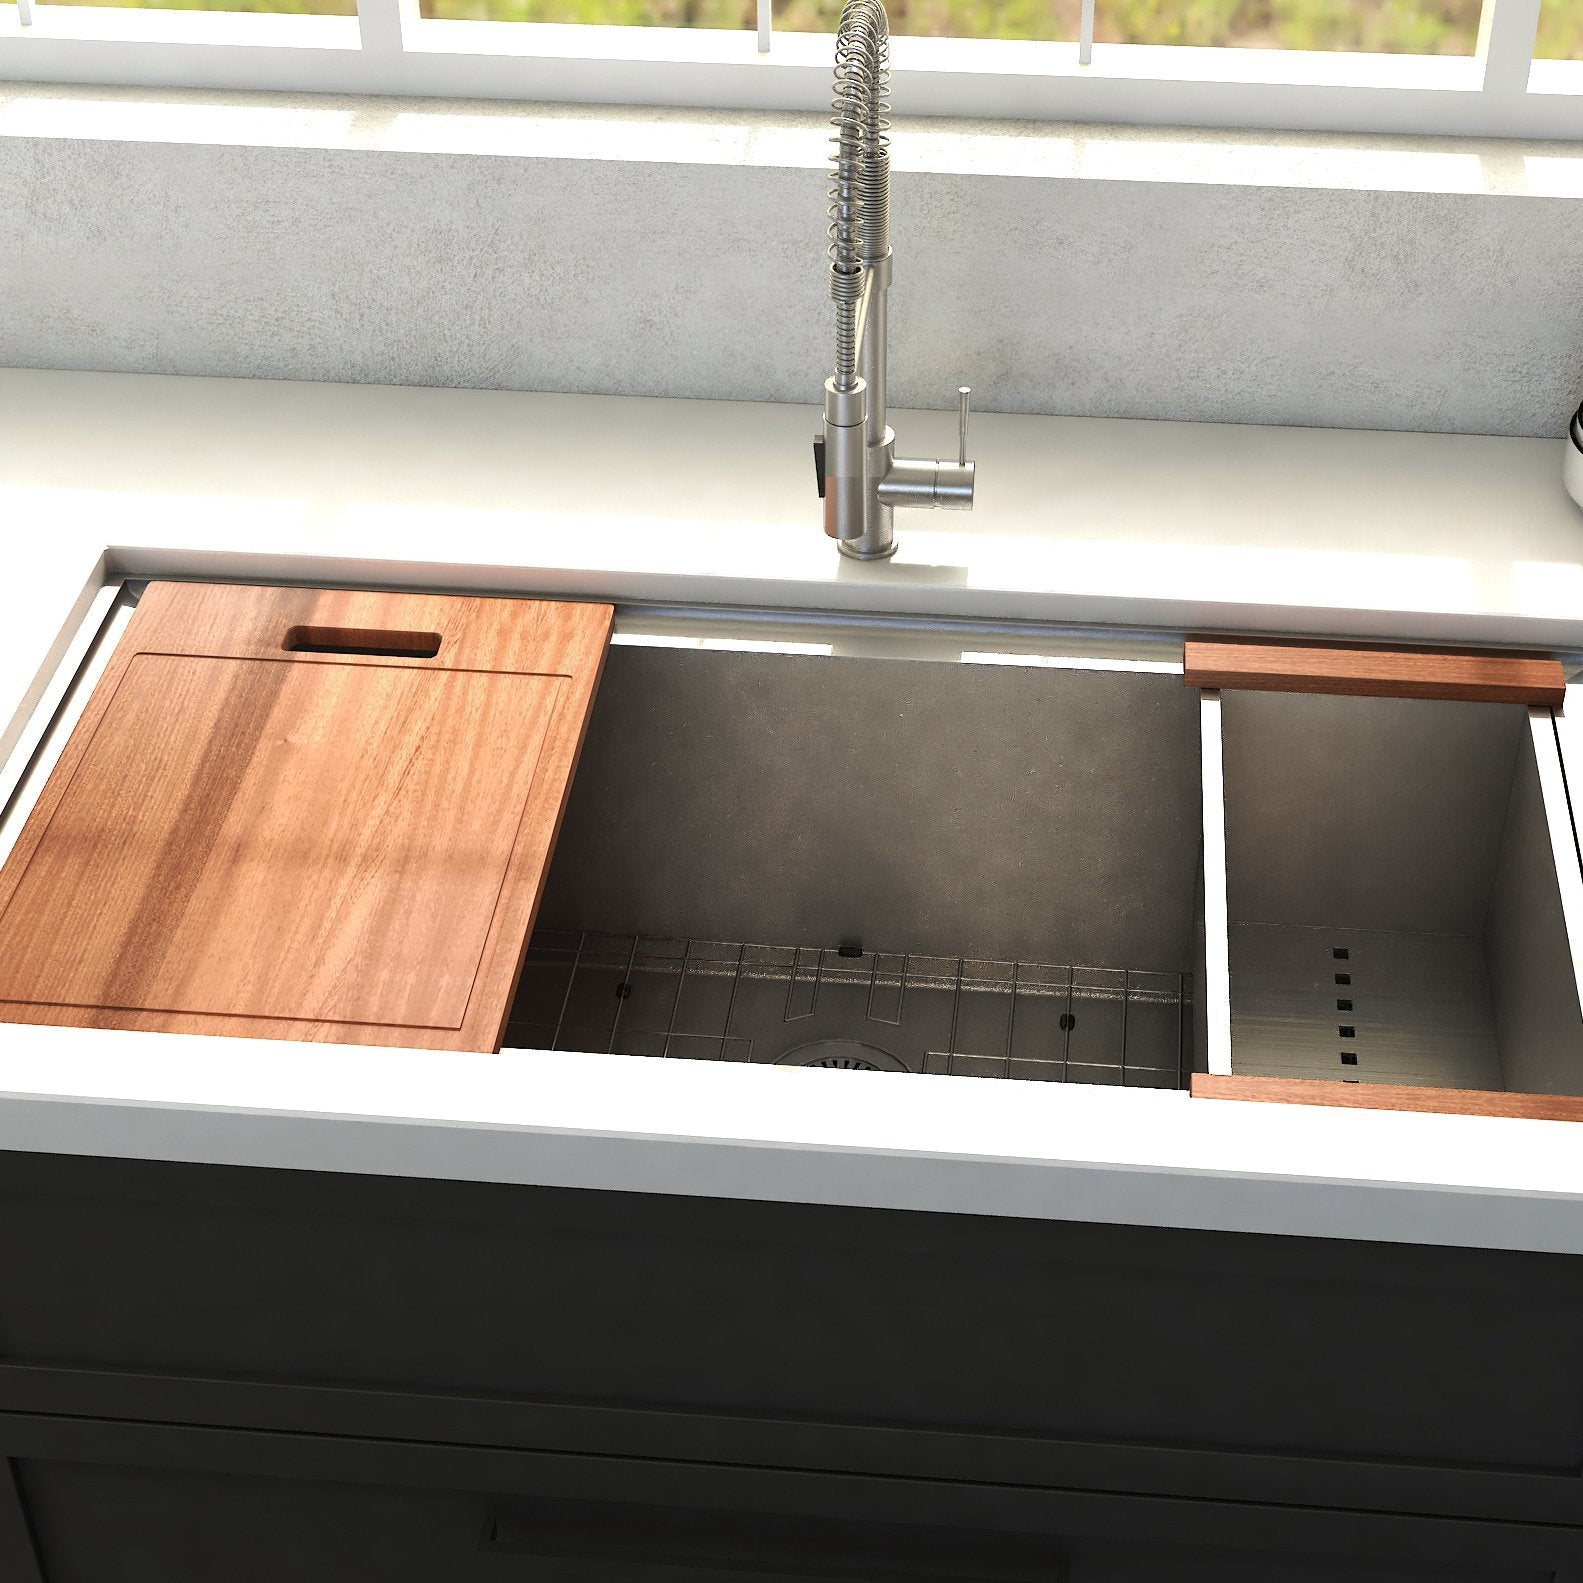 ZLINE 33 in. Garmisch Undermount Single Bowl Stainless Steel Kitchen Sink with Bottom Grid and Accessories, SLS-33